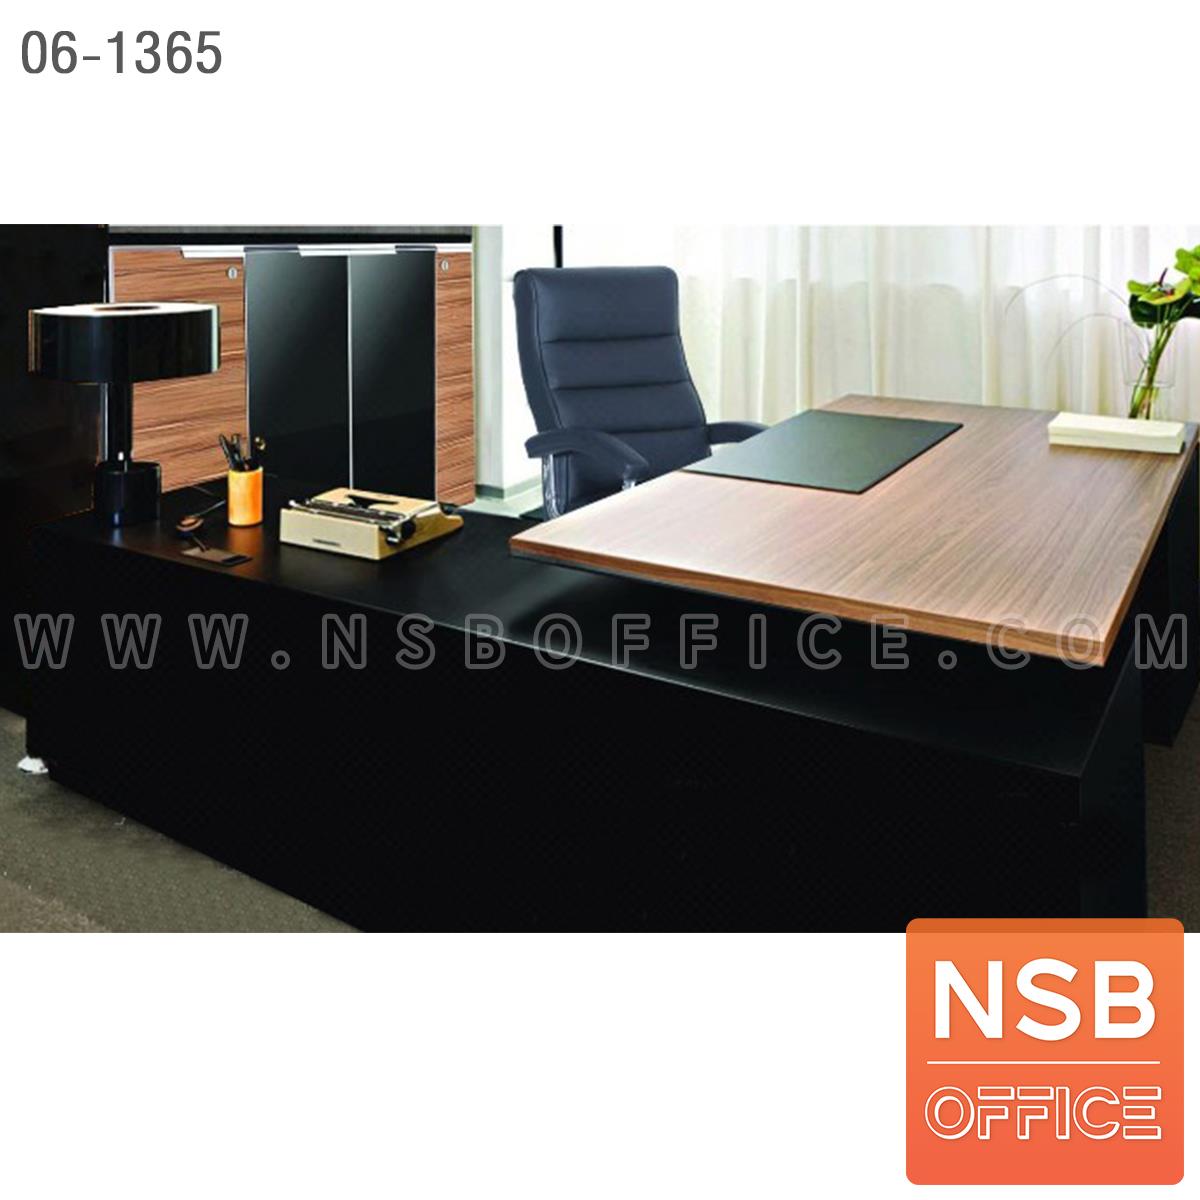 SETA005:เซ็ตโต๊ะทำงานตัวแอล สีวอลนัท-ดำ รุ่น Blackwalnut (แบล็ควอลนัท)  พร้อมตู้เก็บเอกสาร เก้าอี้ (รวม 4 ชิ้น)